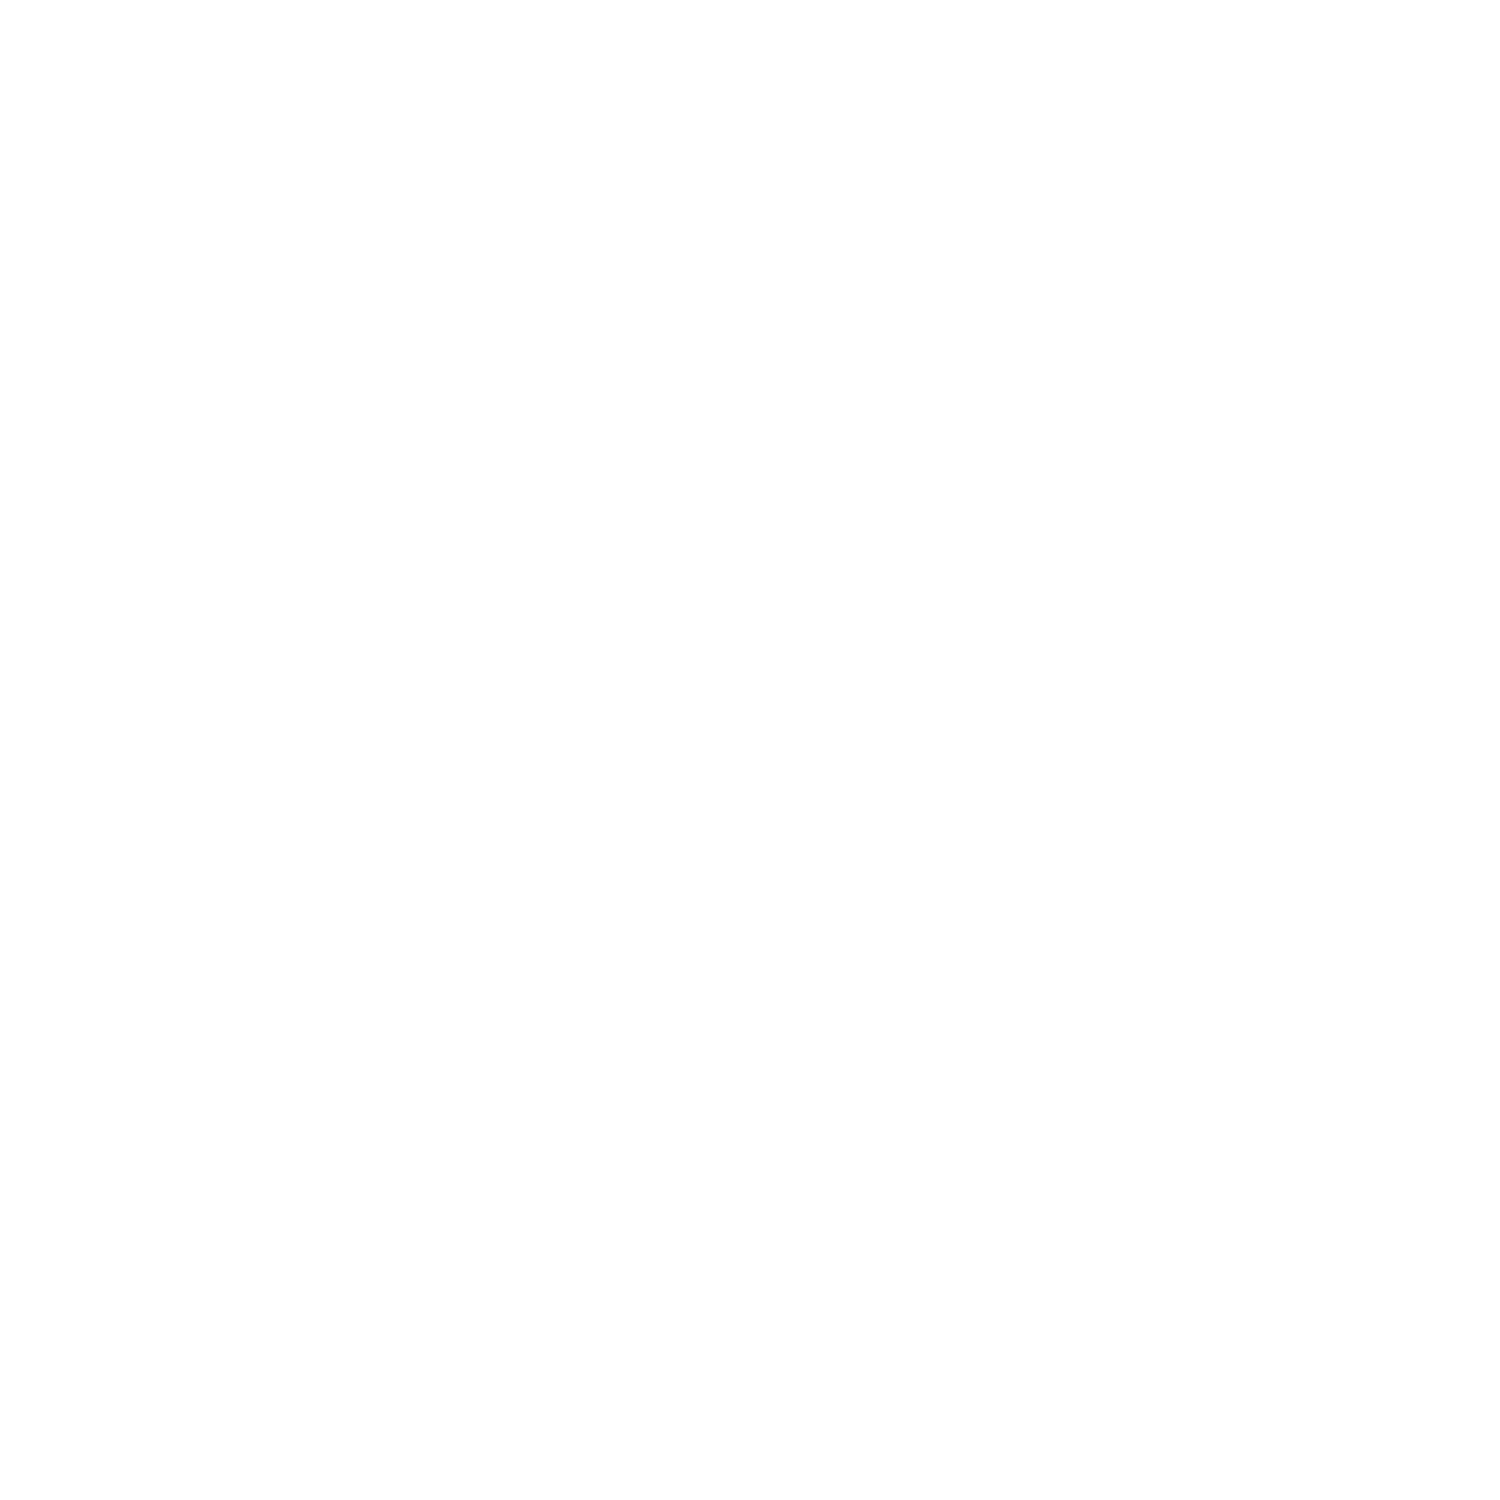 Highland Assembly